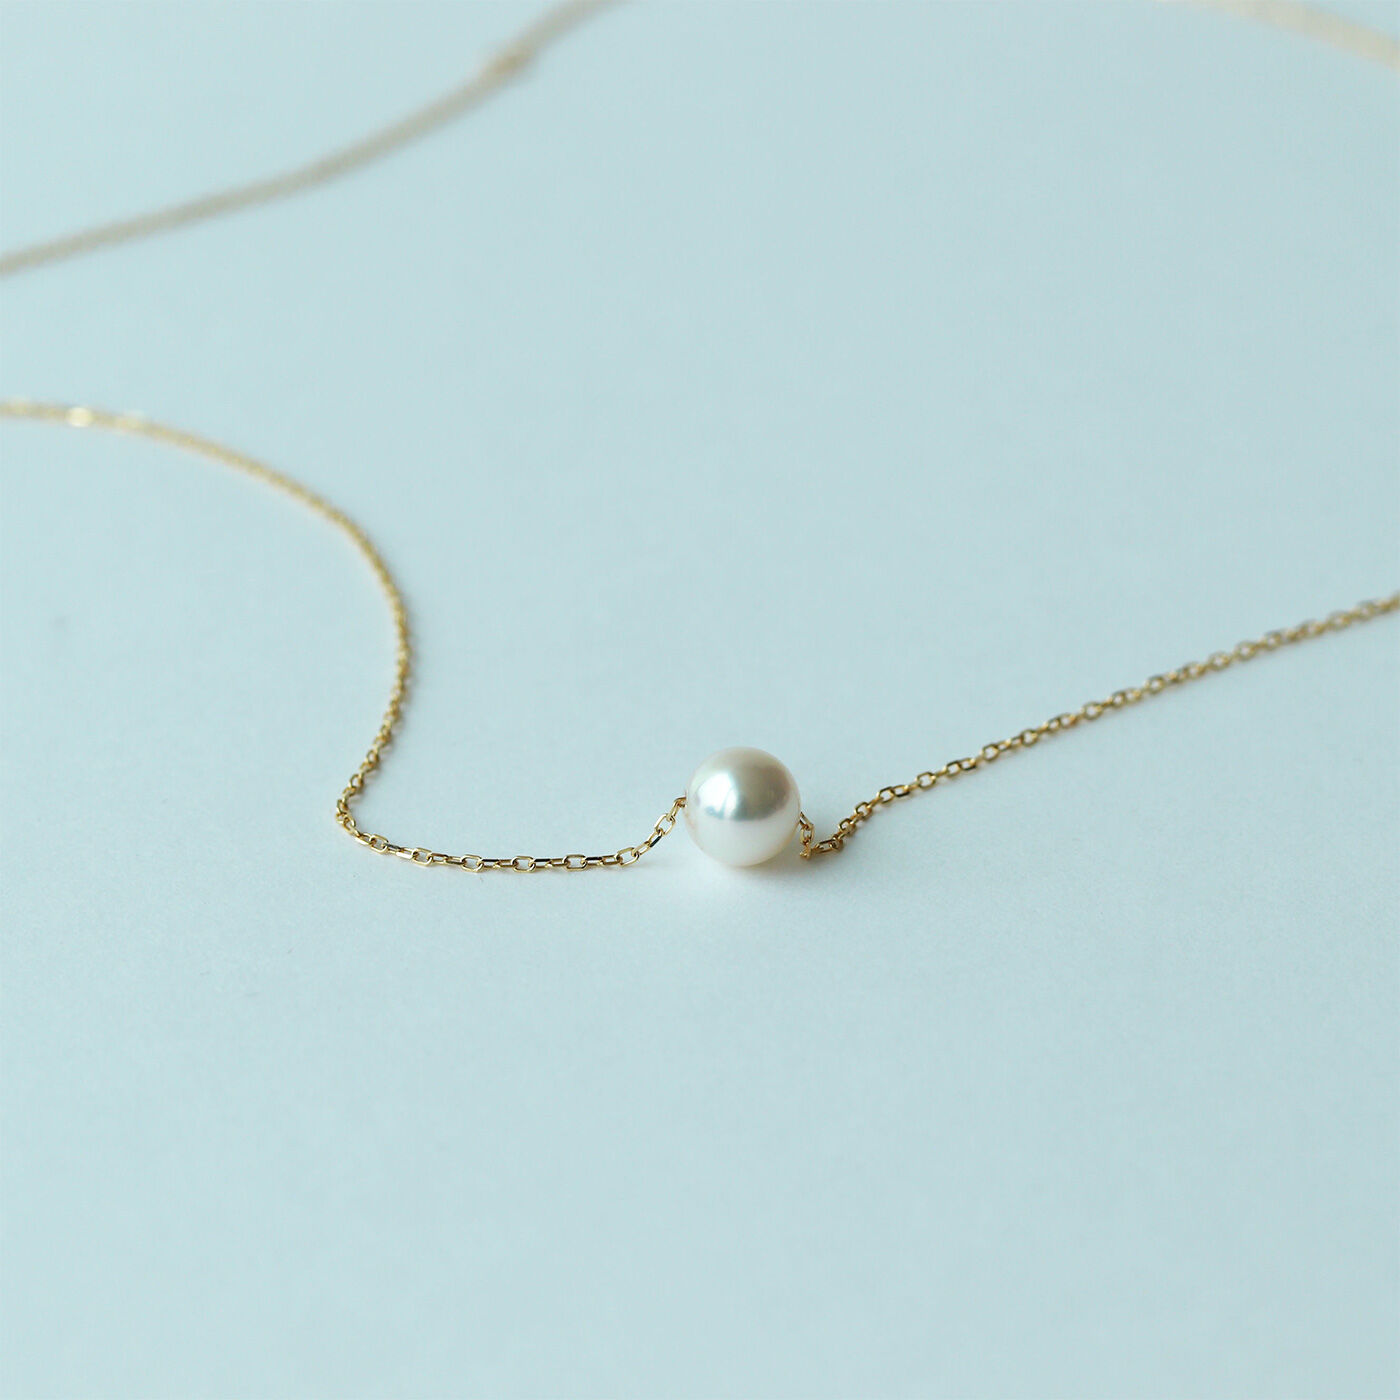 真珠ネックレス パール 箱付き デザイン 高級 上品 ギフト プレゼント レア